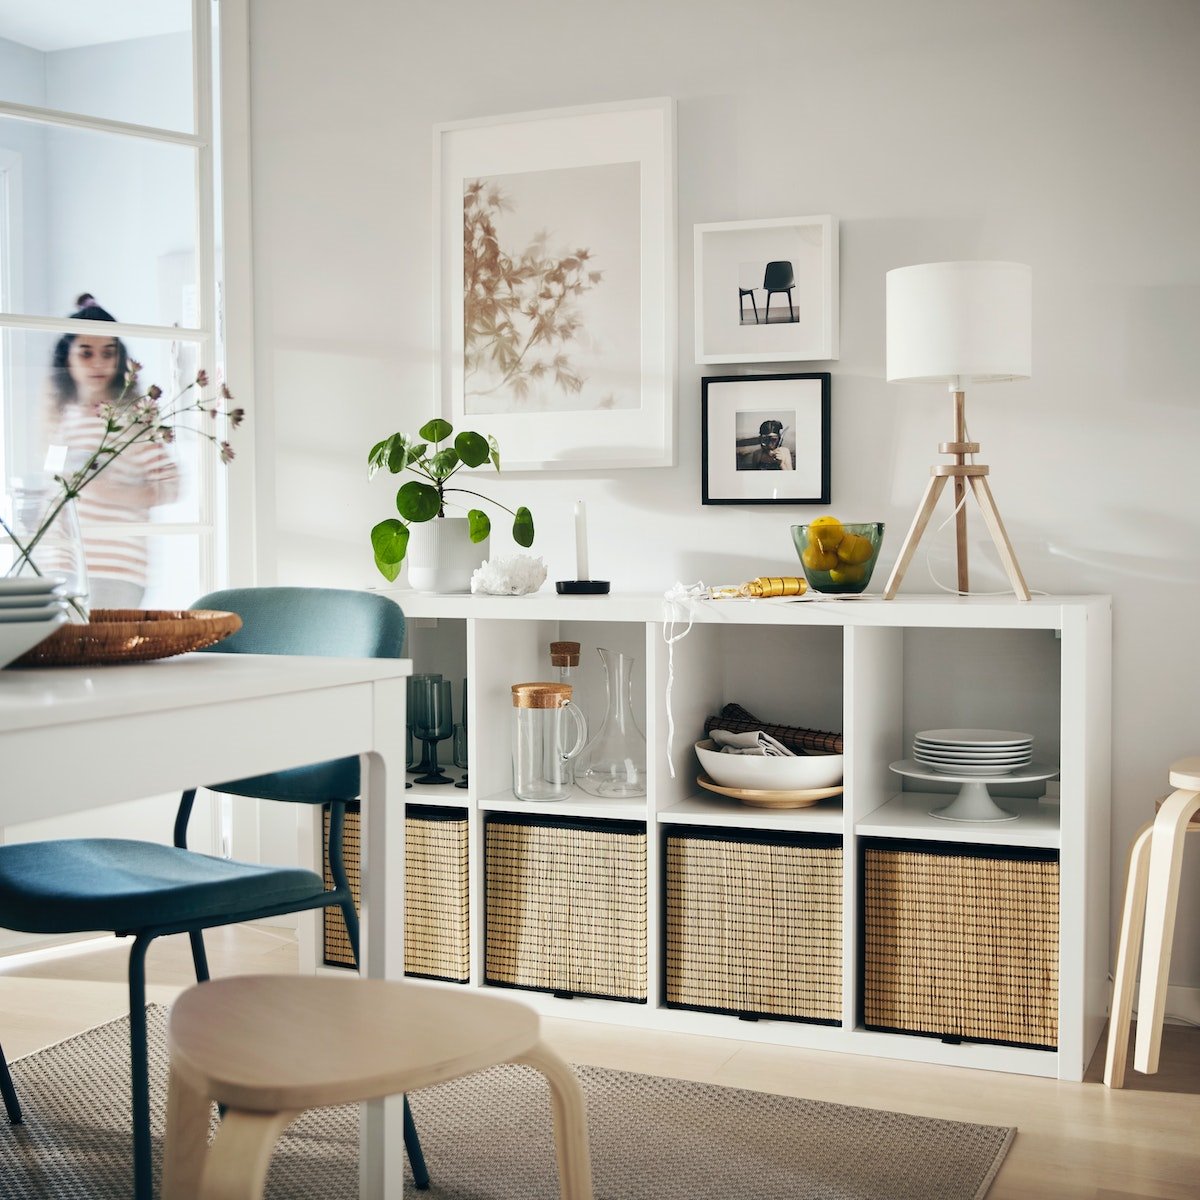 Las estanterías Kallax, un clásico de Ikea que puede destinarse a diversos usos y estancias.